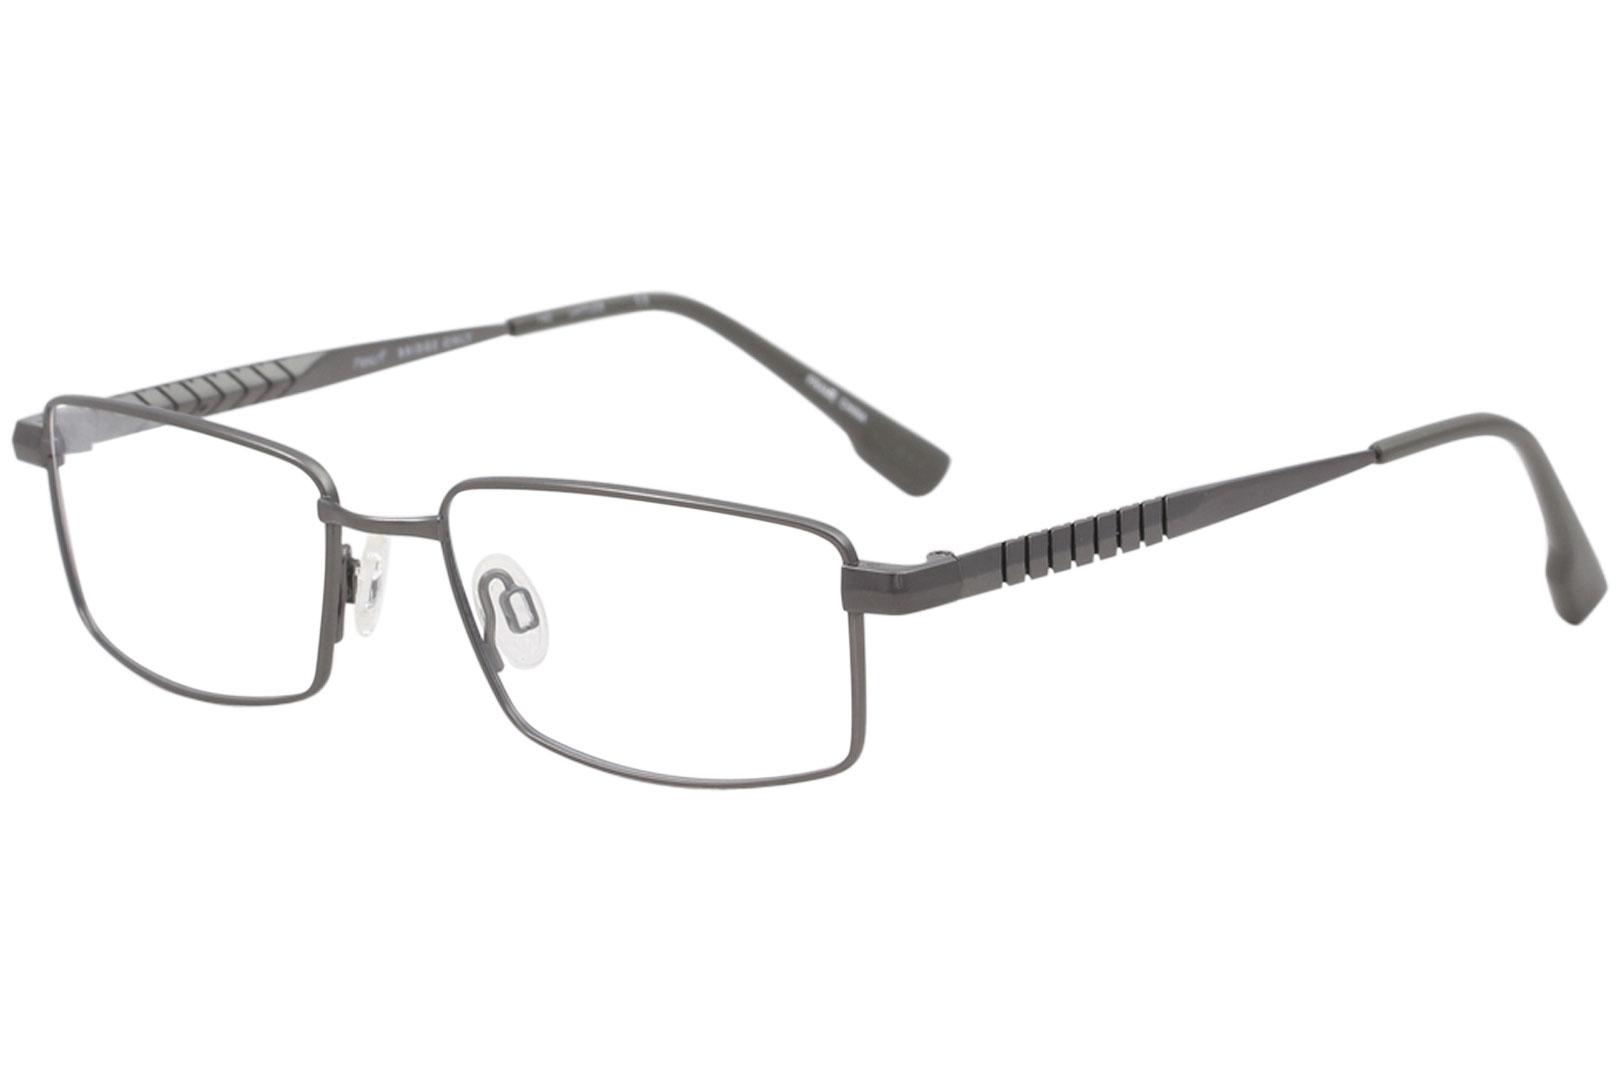 Flexon Men's Eyeglasses E1012 E/1012 033 Gunmetal Full Rim Optical Frame 54mm - Gunmetal - Lens 54 Bridge 17 Temple 140mm